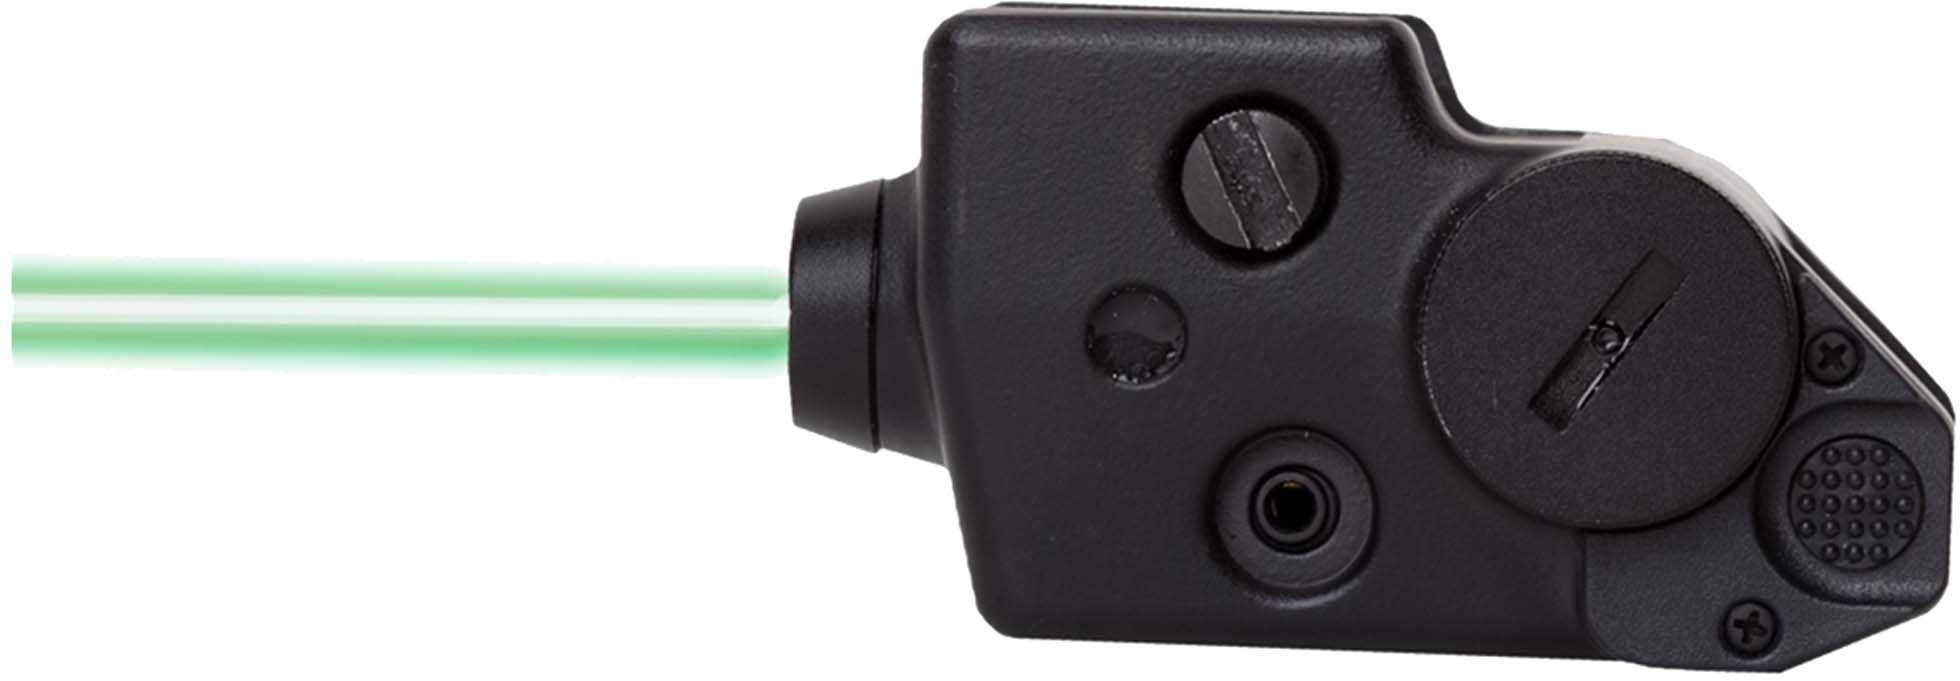 Sightmark CGL Triple Duty Green Laser SM25002